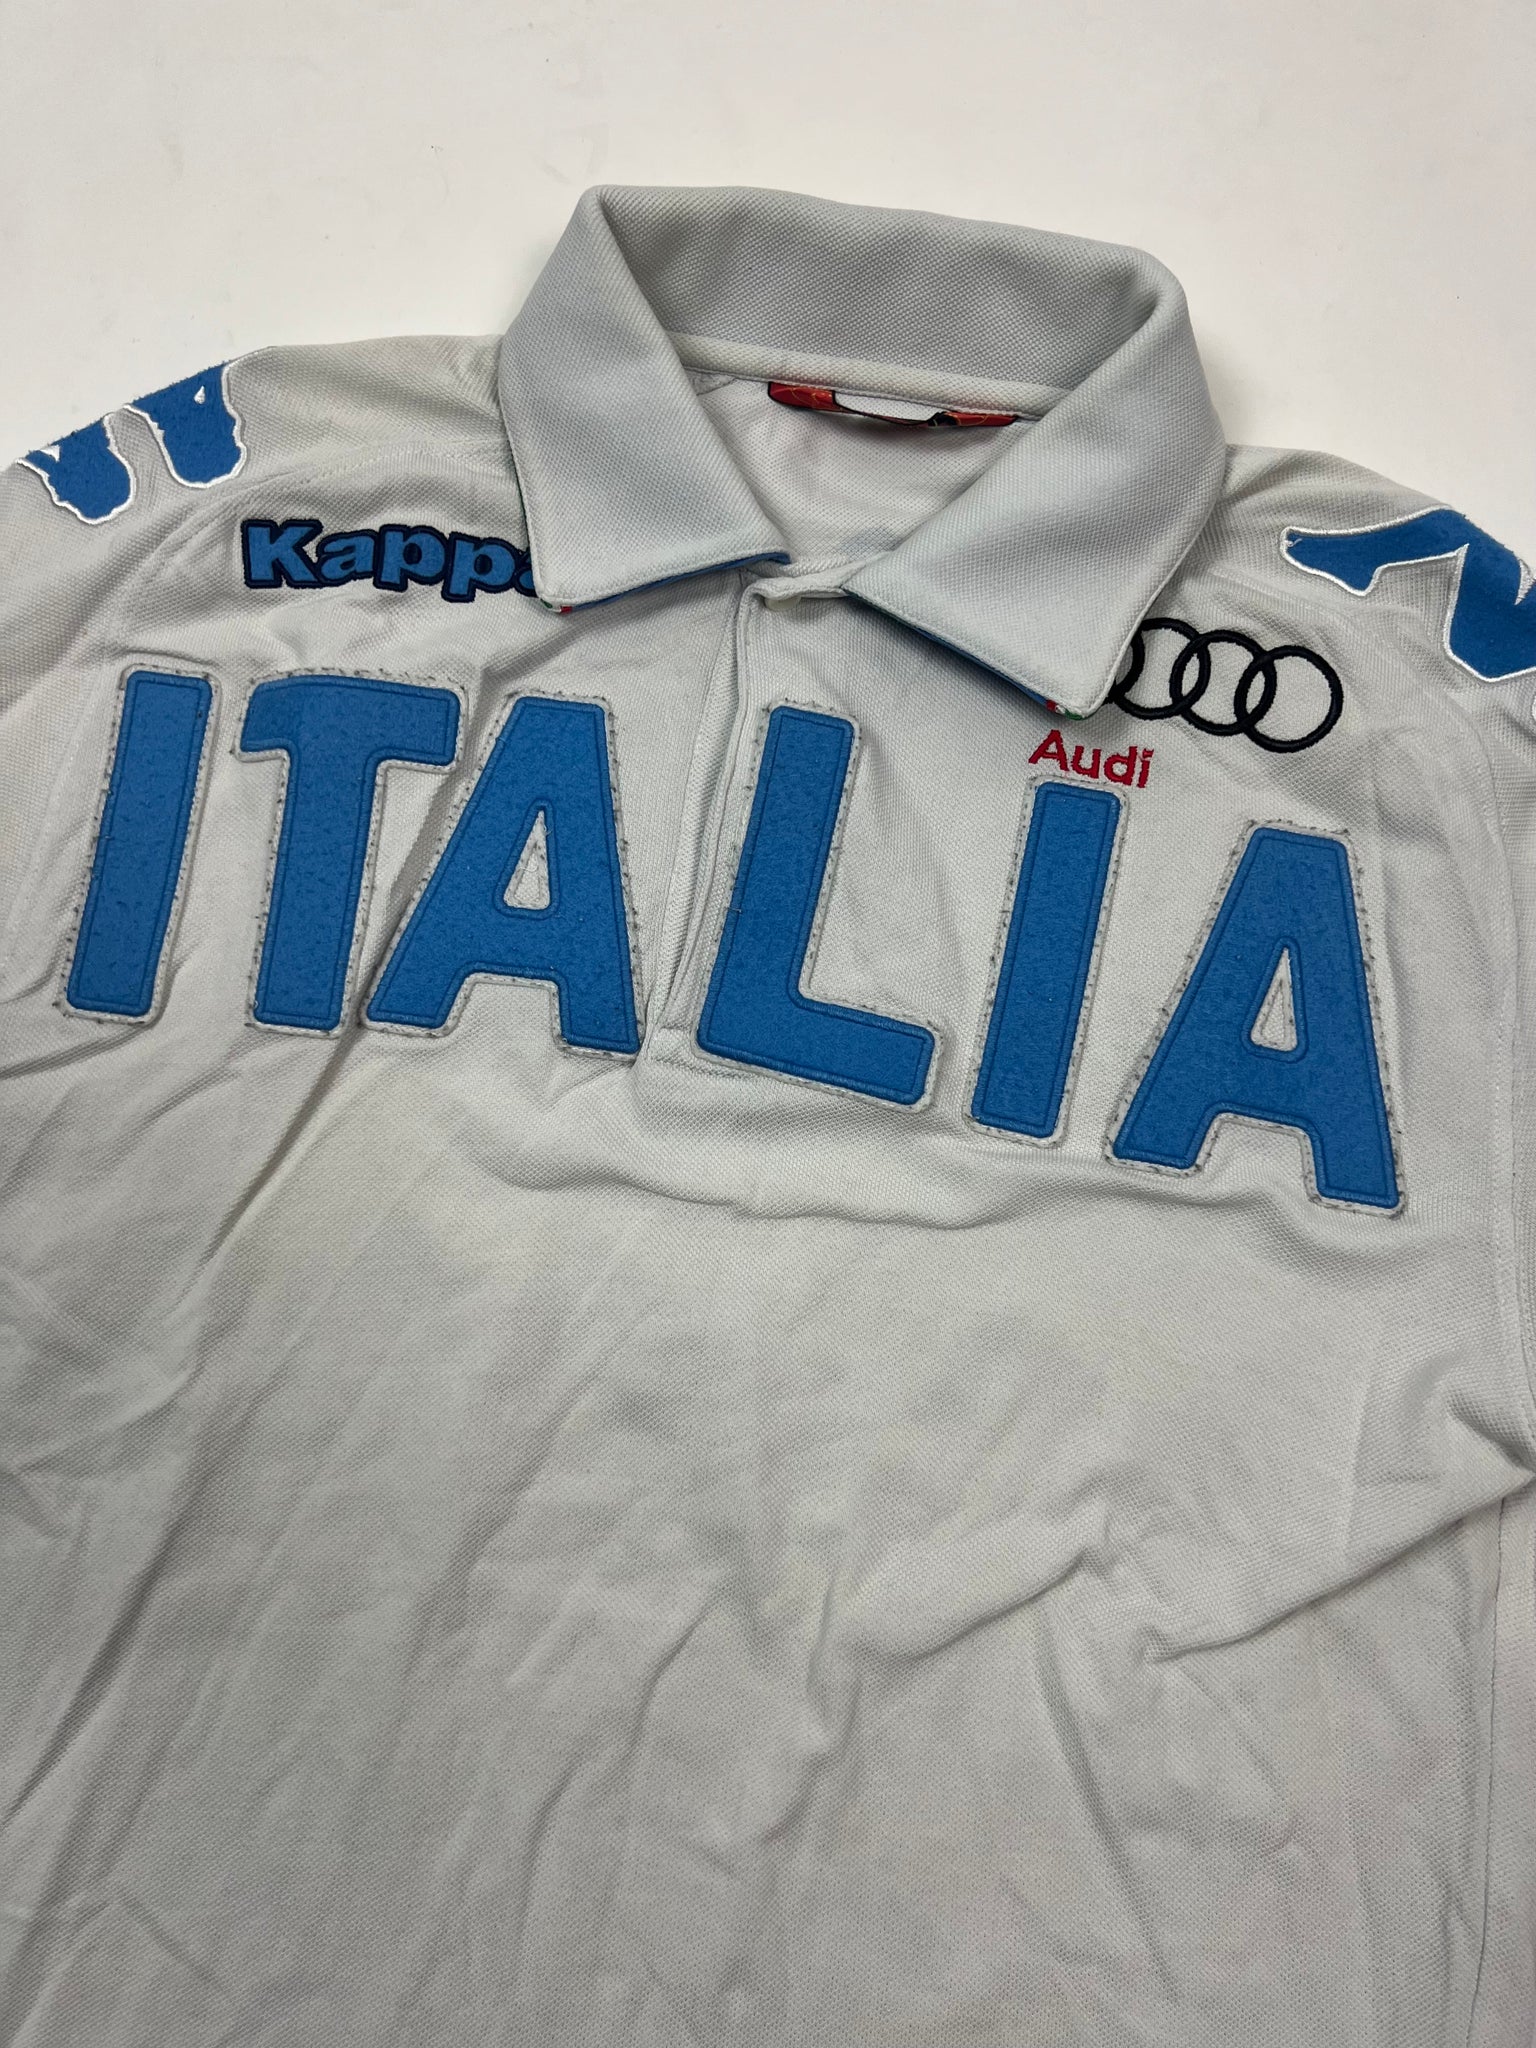 Kappa Italia Polo (M)